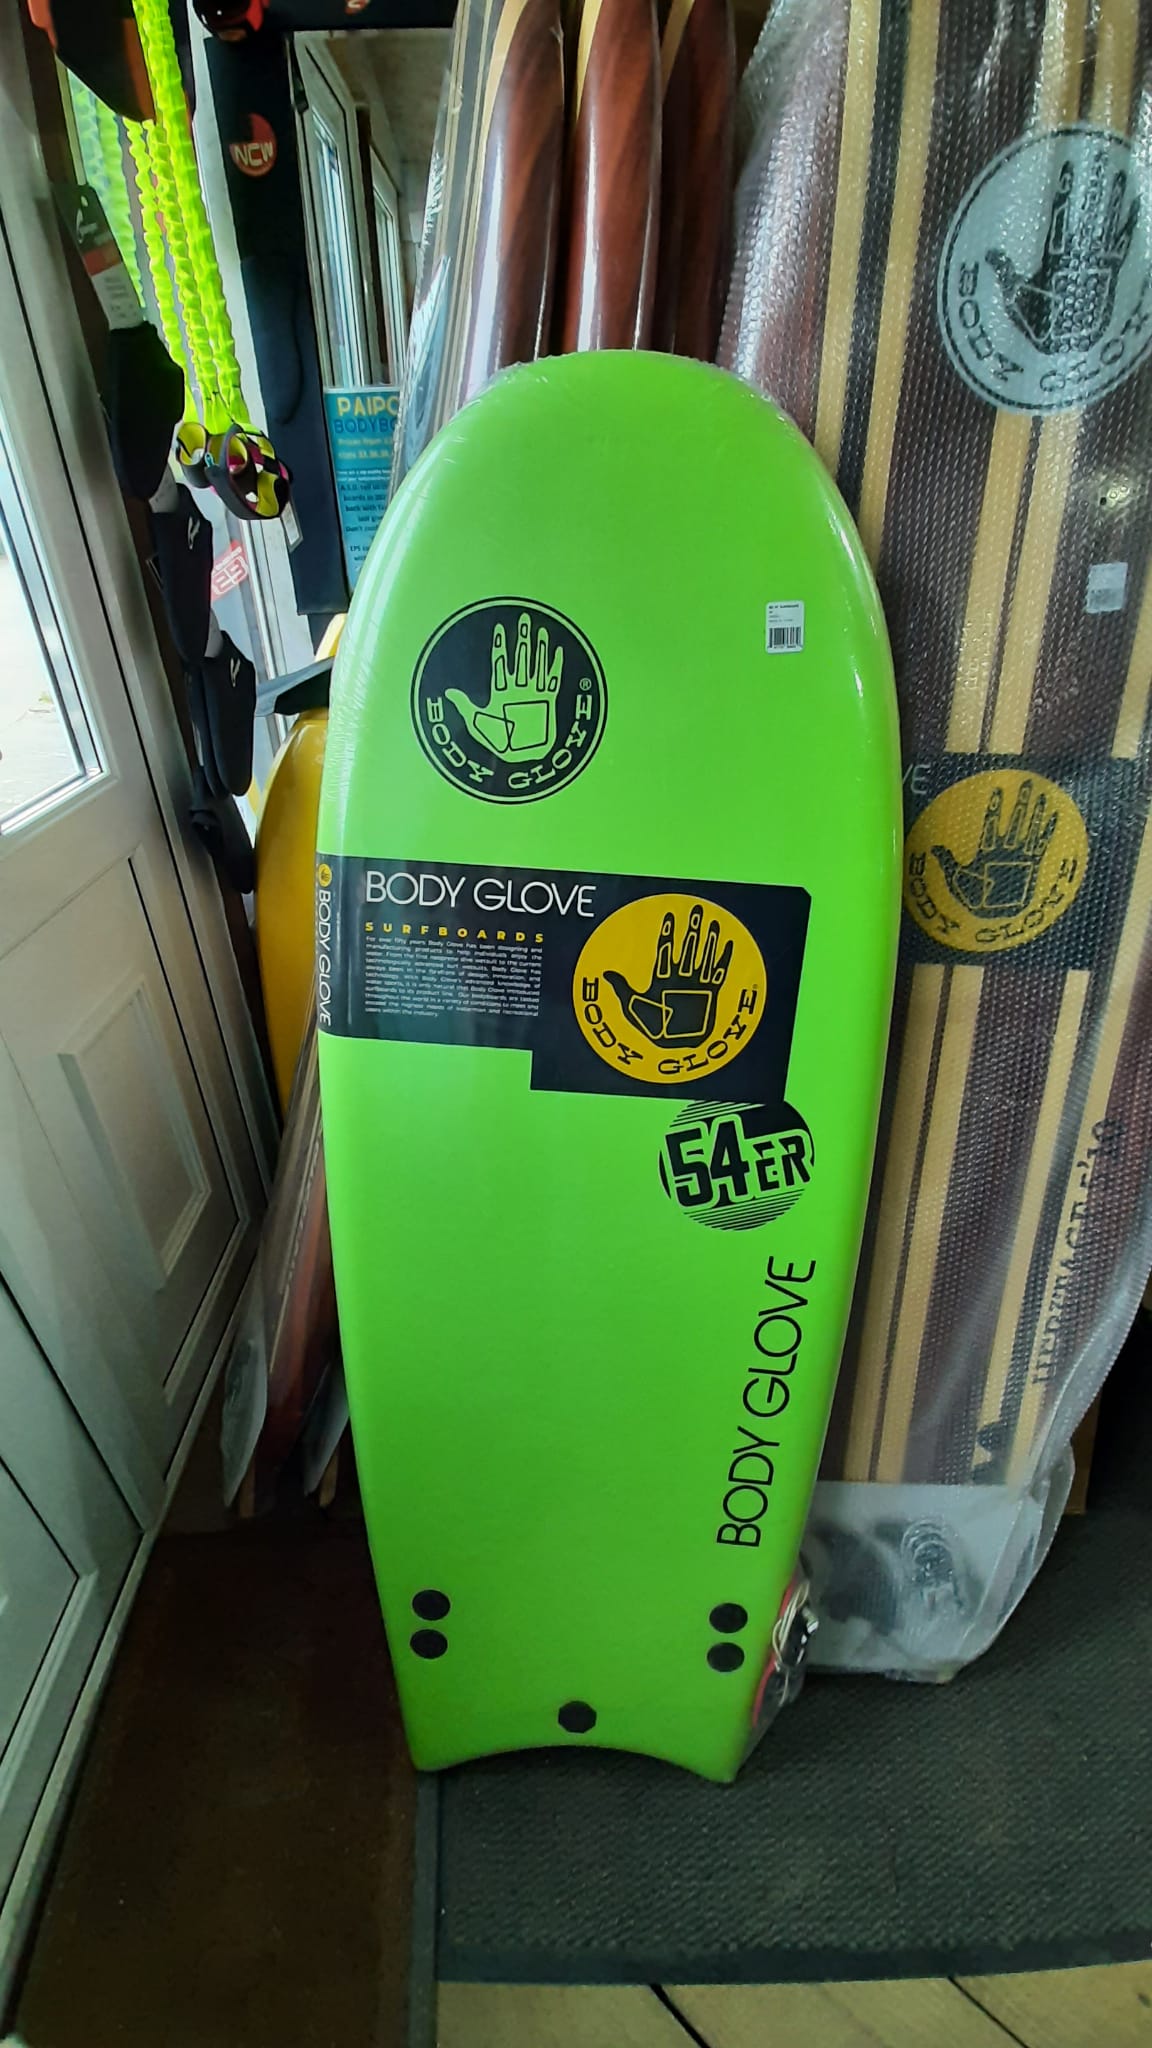 Body Glove 54'er Soft Top Mini Surfboard / bodyboard - Green/Black. - North  Coast Wetsuits - NCW